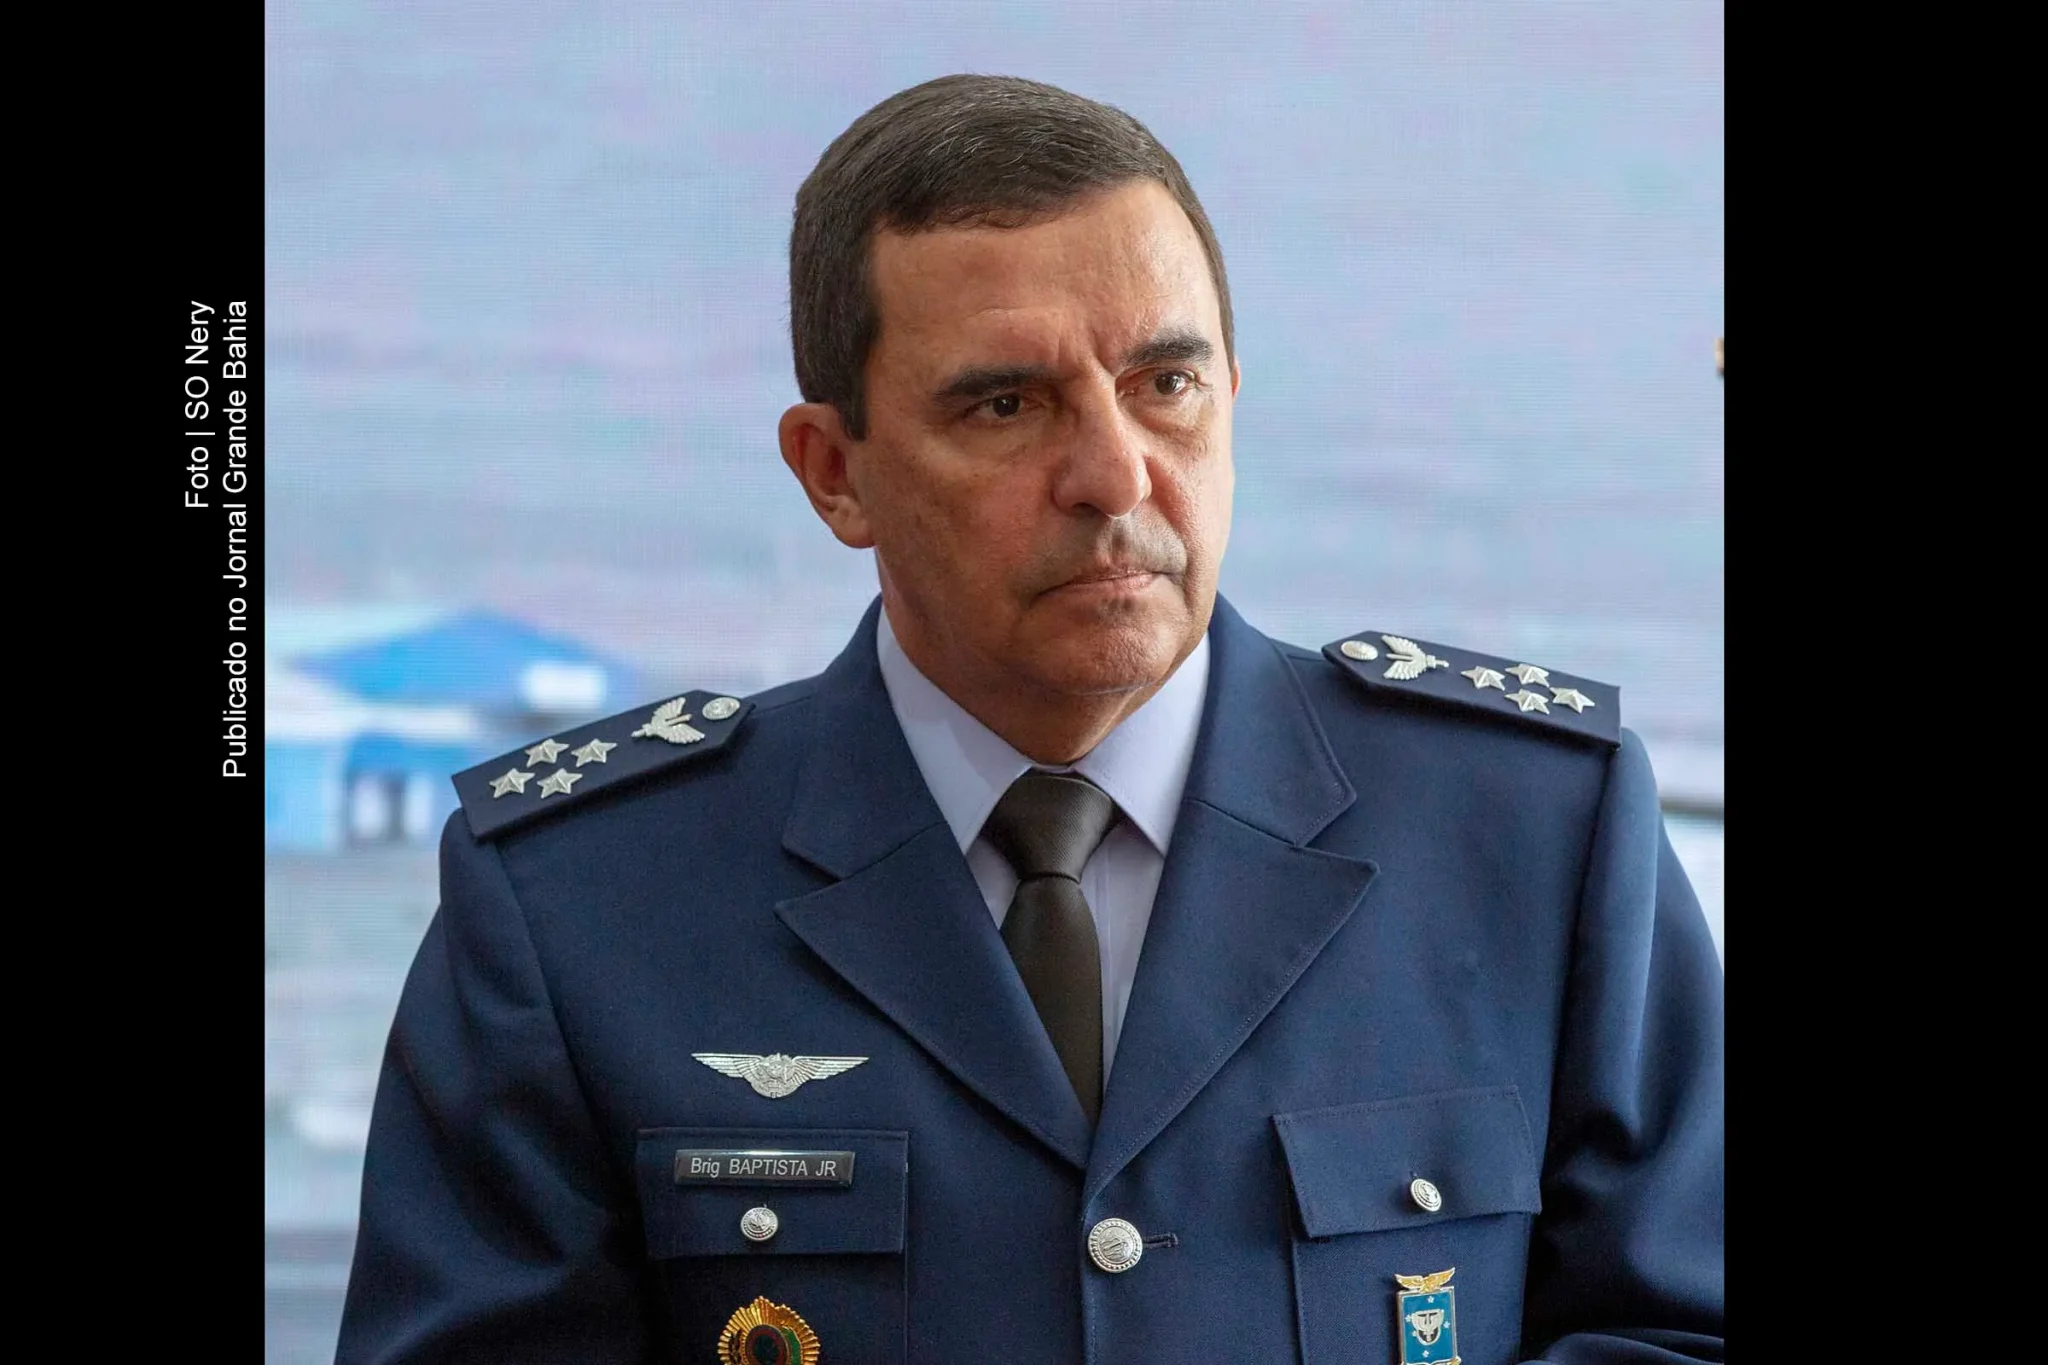 "Jamais apoiaria rupturas democráticas", diz comandante da Força Aérea